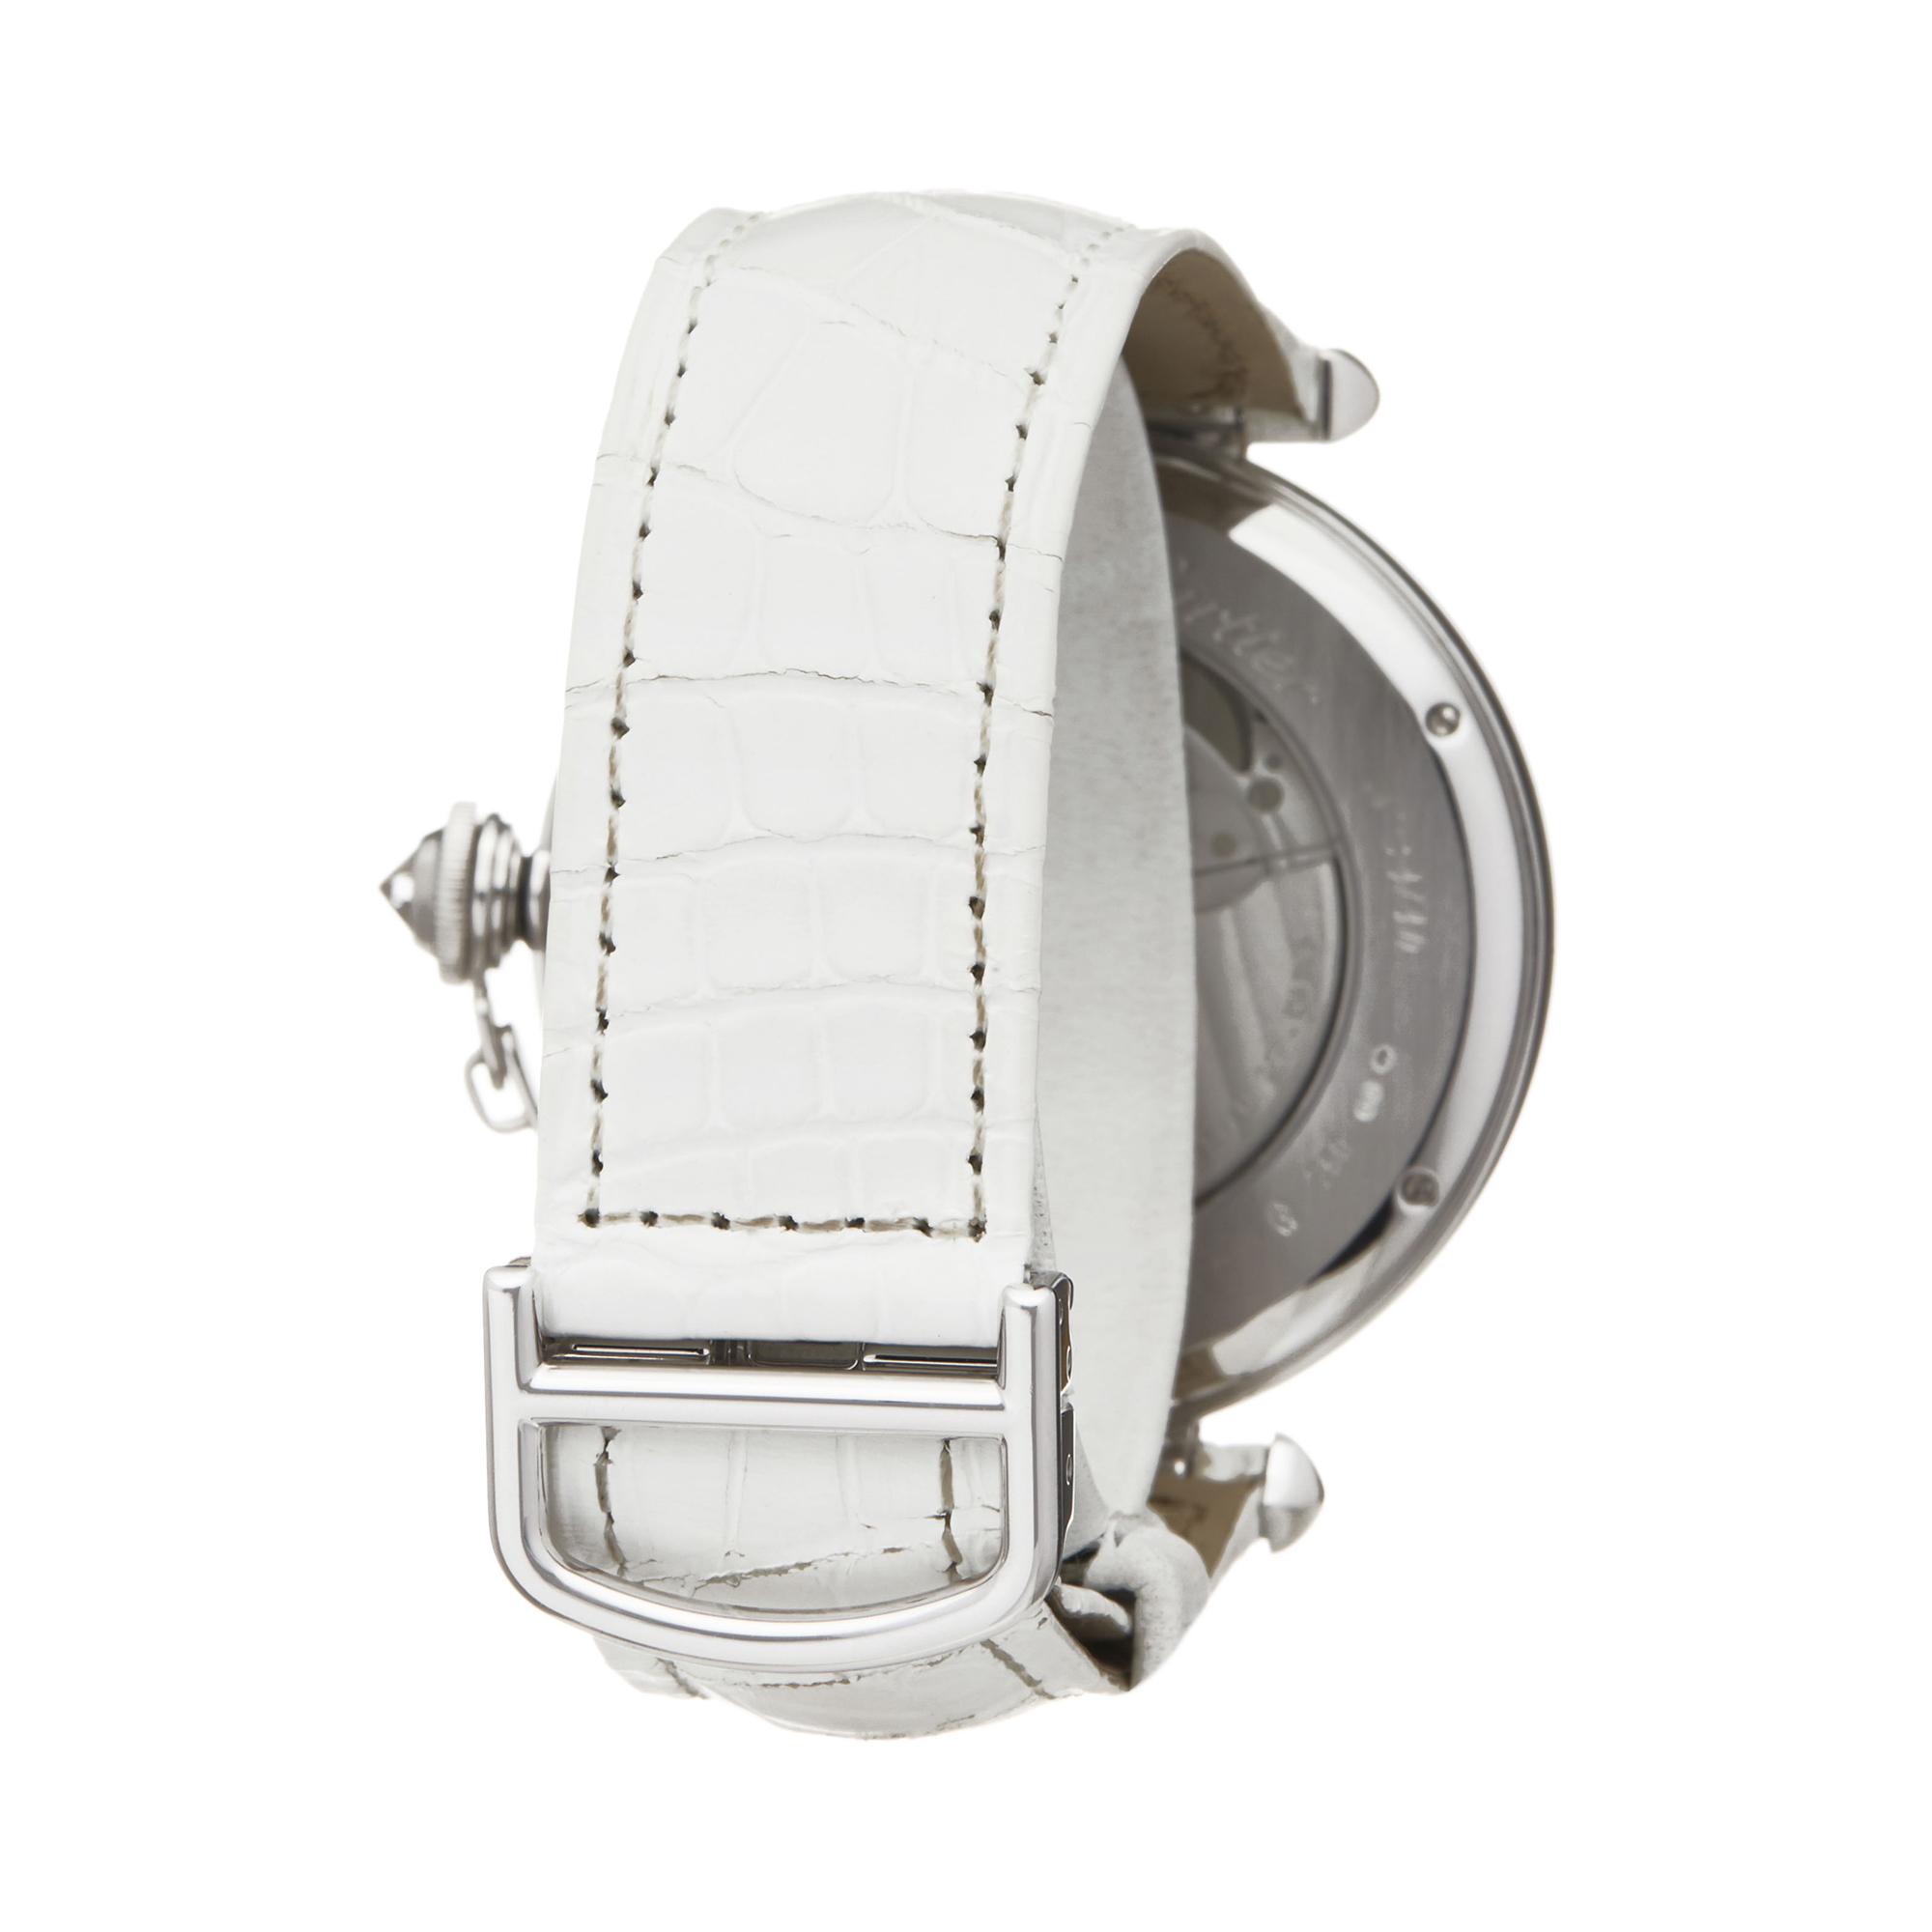 Cartier Pasha de Cartier WJ124006 or 3142L Ladies White Gold Enamel Dial Watch - Image 5 of 8